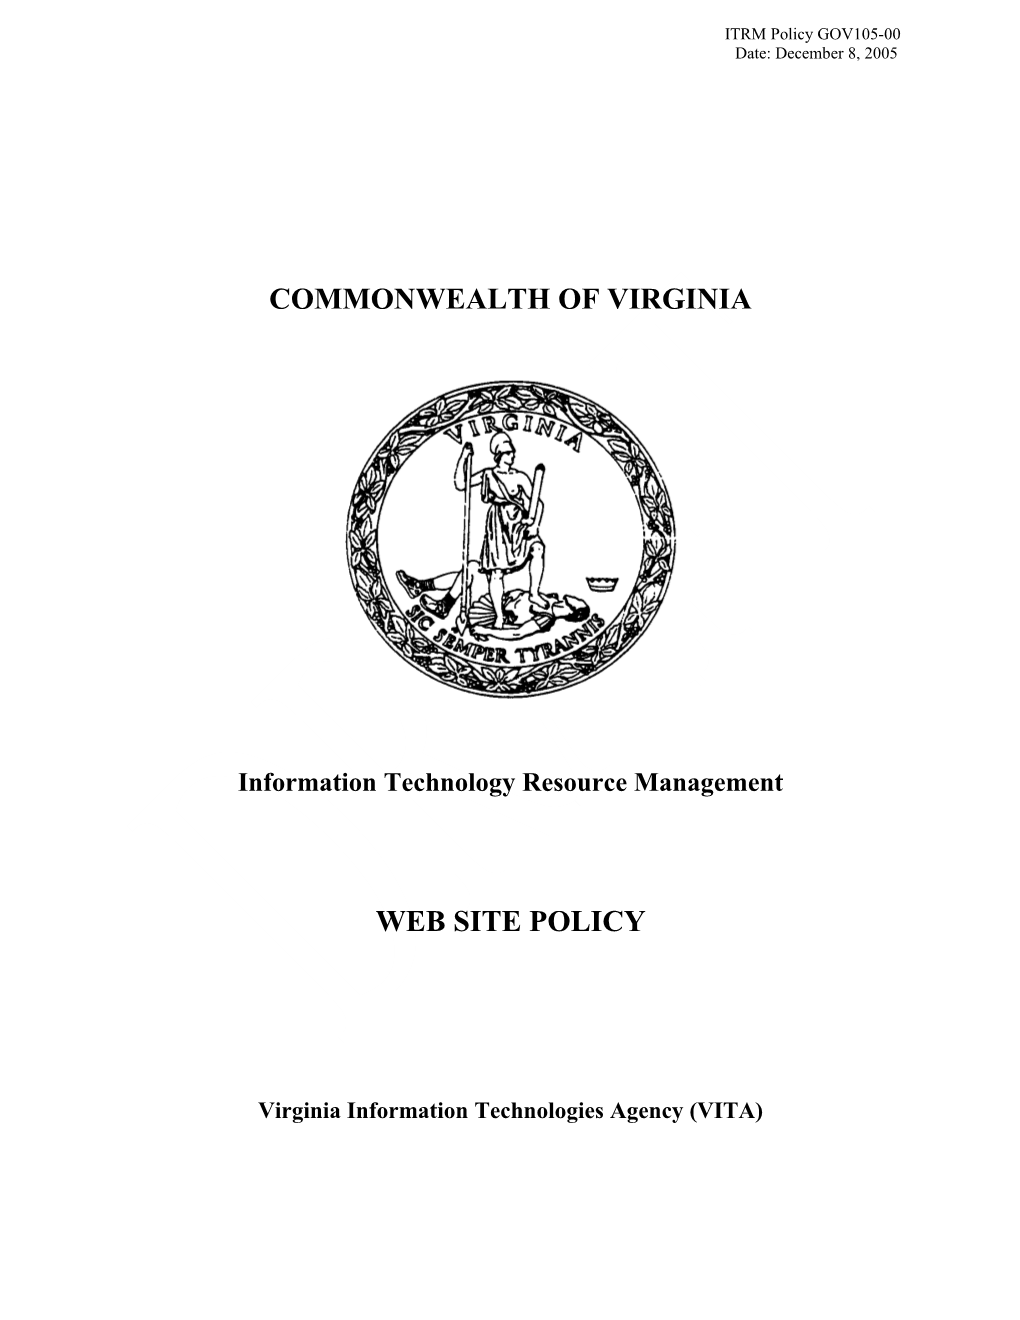 Web Site Policy (GOV105-00)